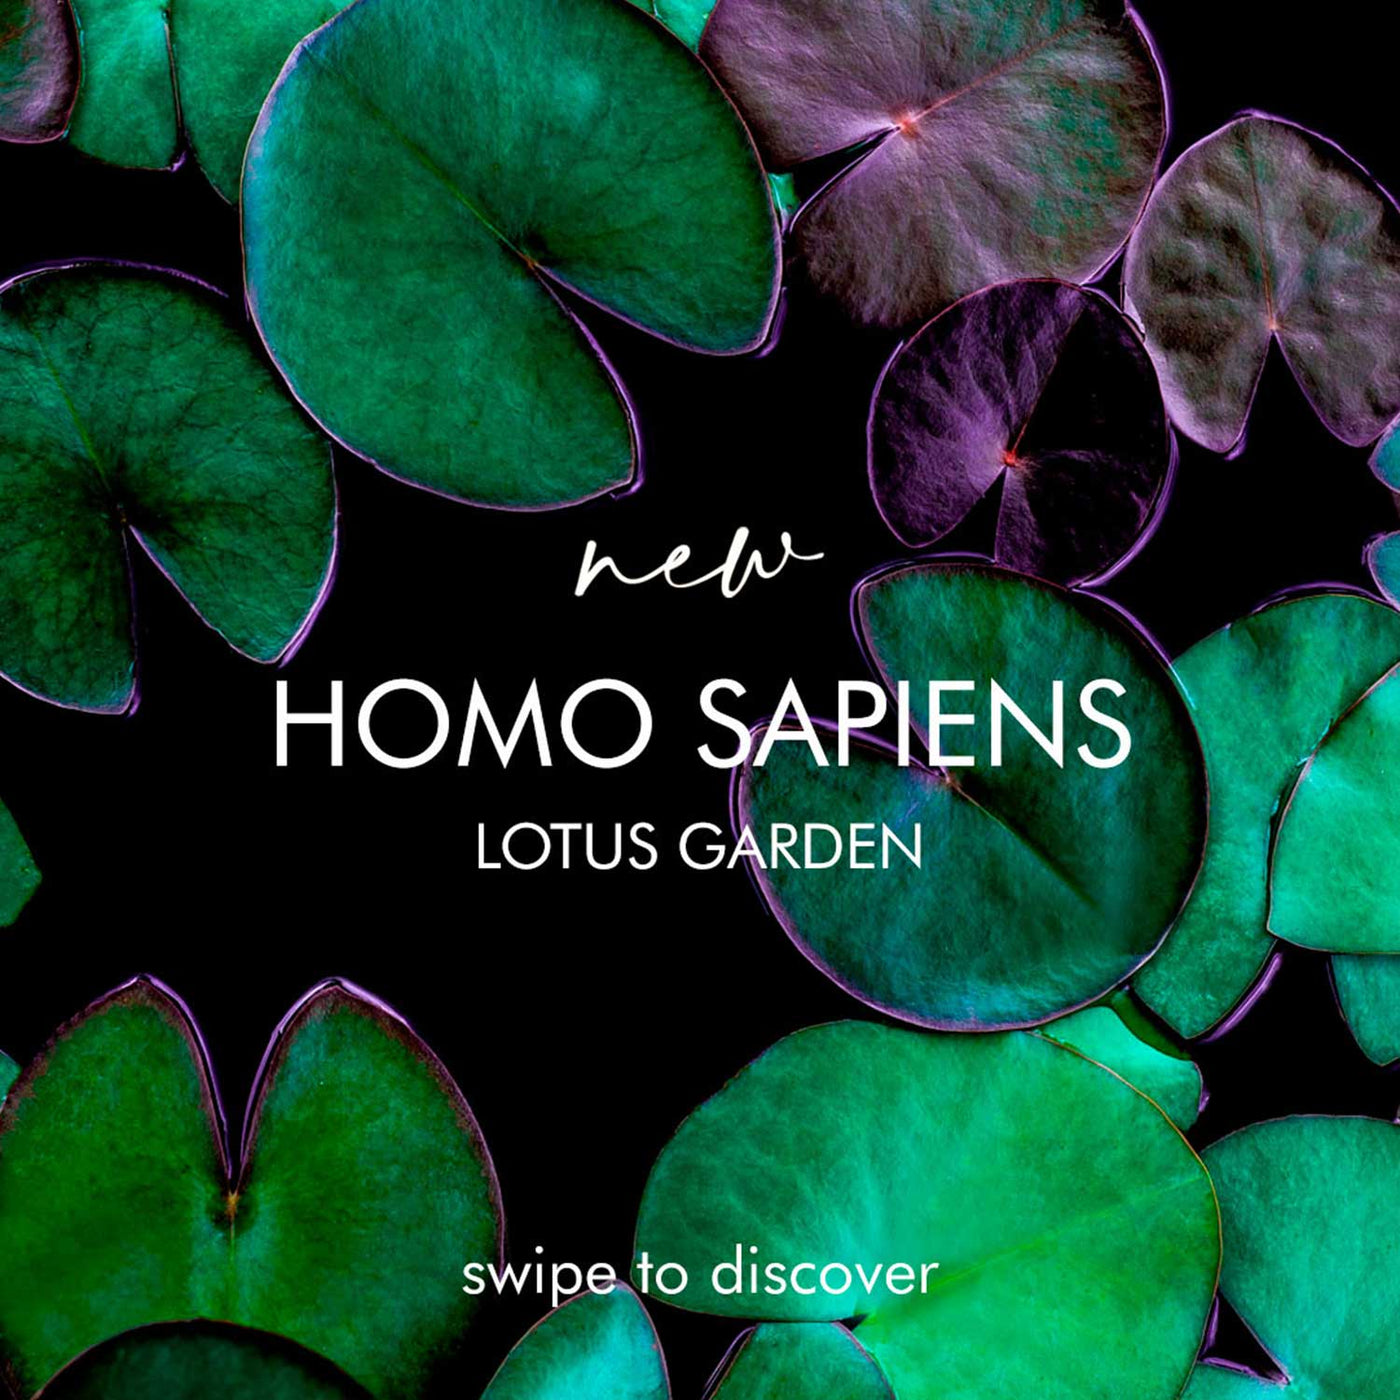 Visconti Homo Sapiens Fountain Pen - Lotus Garden (Limited Edition) 8